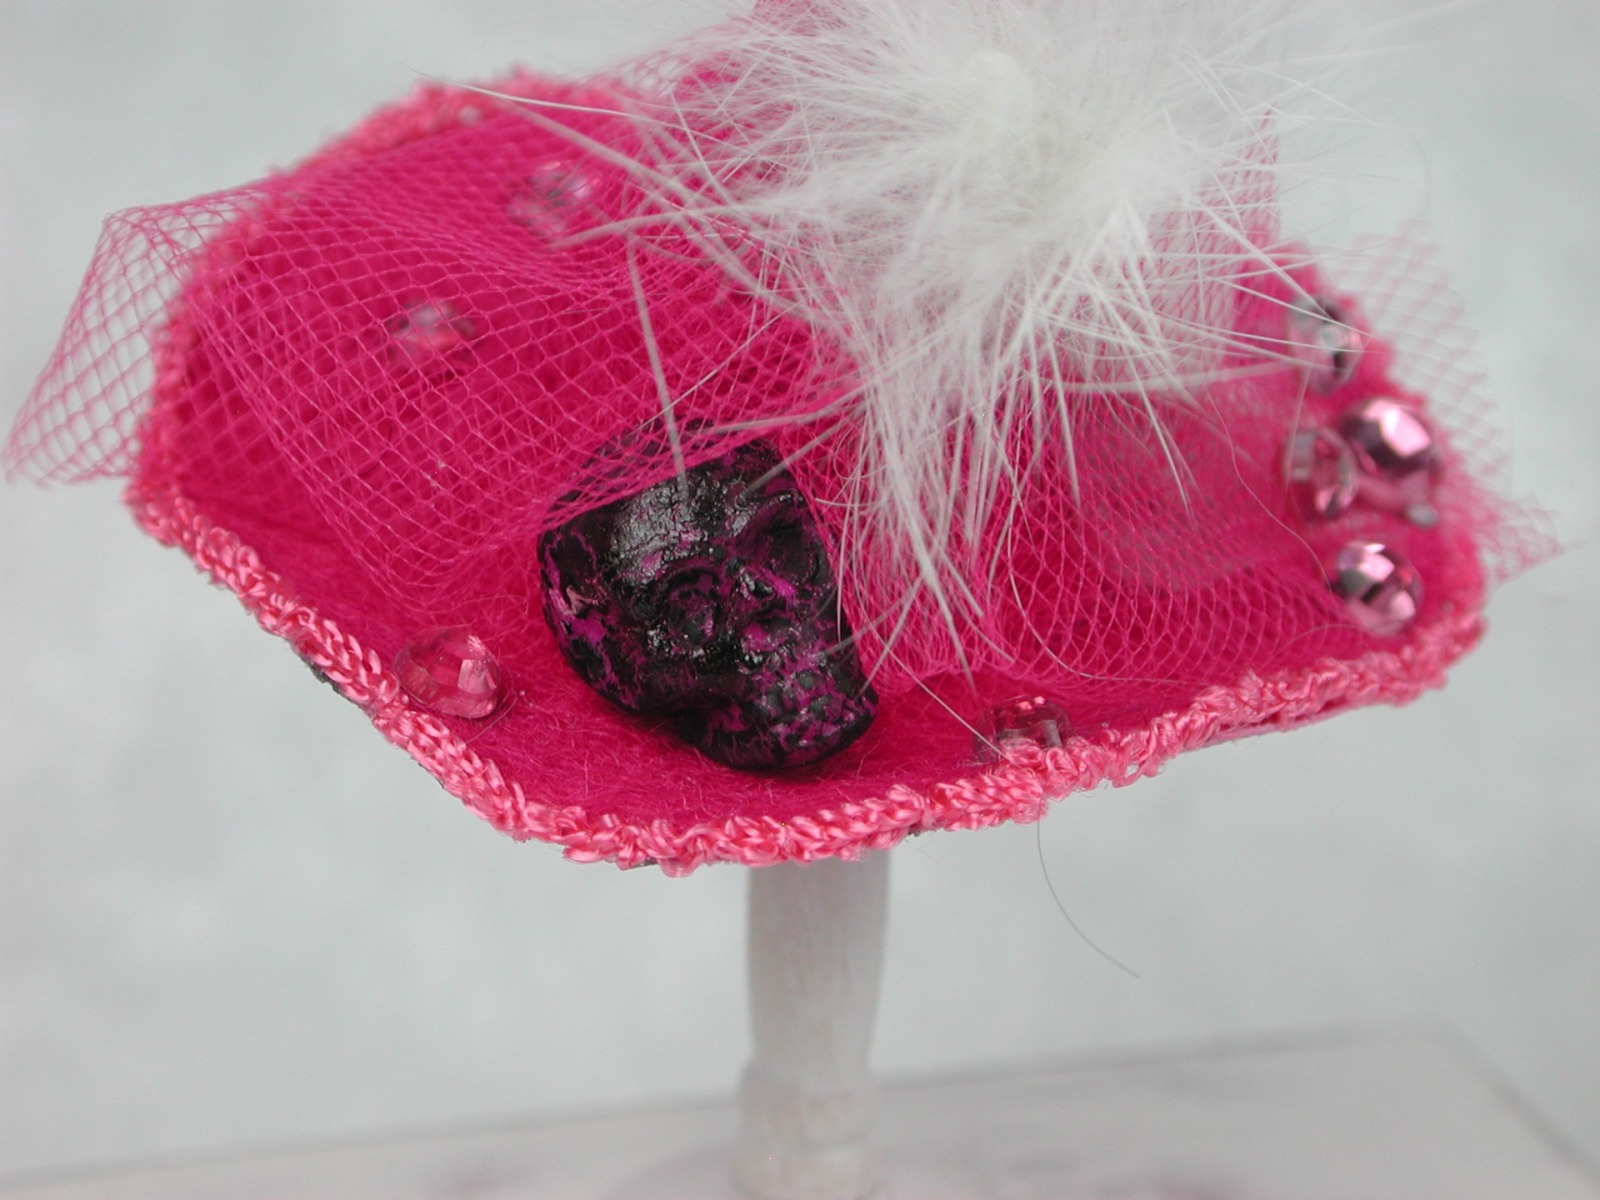 Hexenhut in Miniatur für die Puppenstube in der Farbe Pink Maßstab 1:12 6